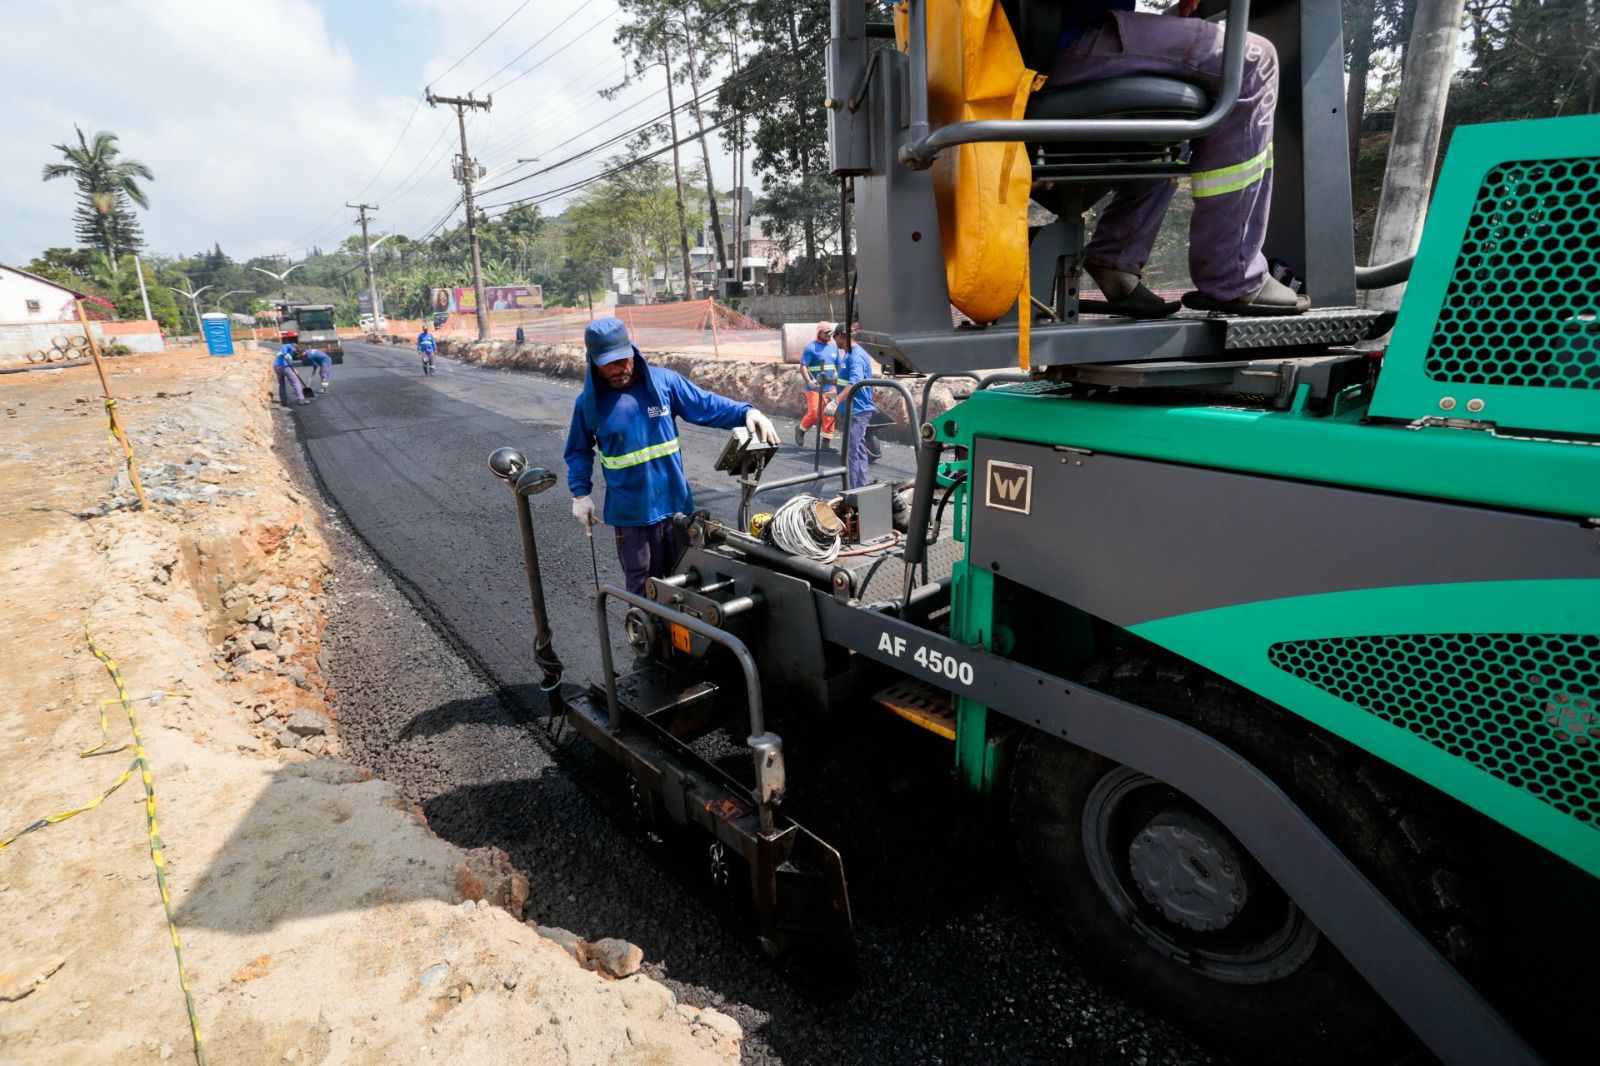 Ruas Ottokar Doerffel, Santa Catarina, Copacabana e entorno do Hospital São José recebem obras da Prefeitura no fim de semana